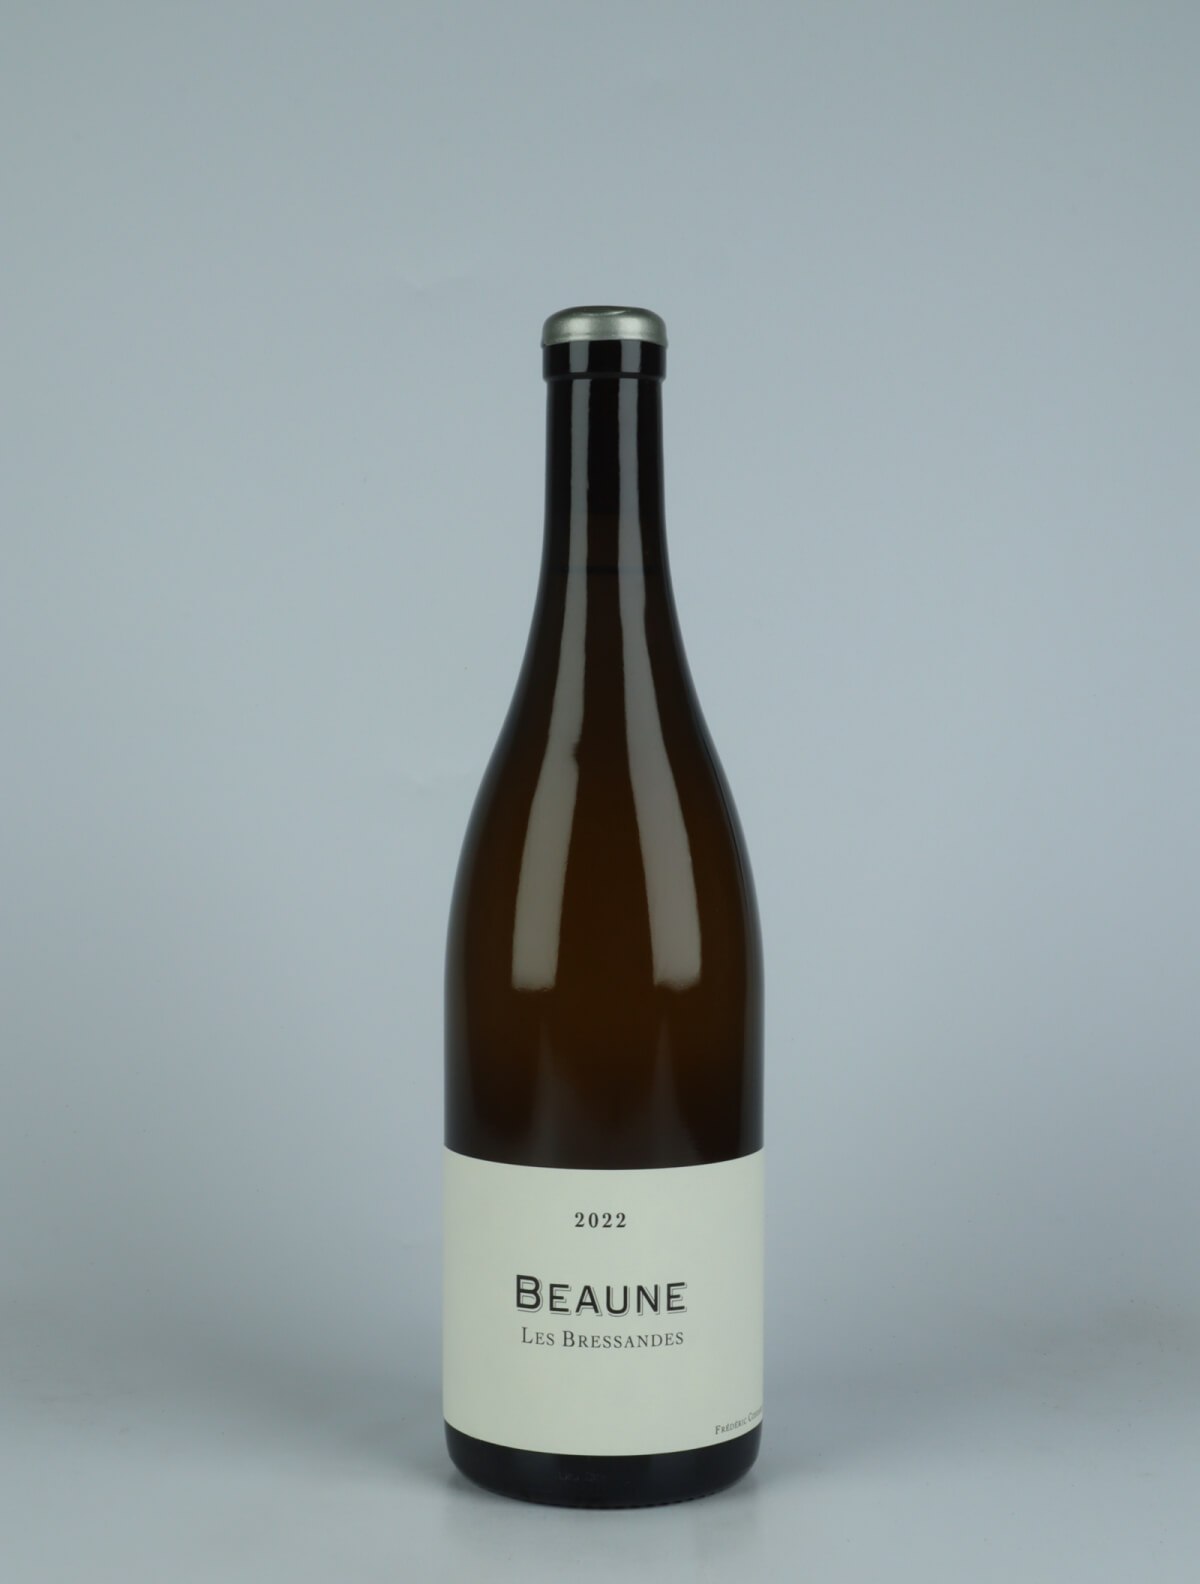 En flaske 2022 Beaune Blanc - Les Bressandes Hvidvin fra Frédéric Cossard, Bourgogne i Frankrig